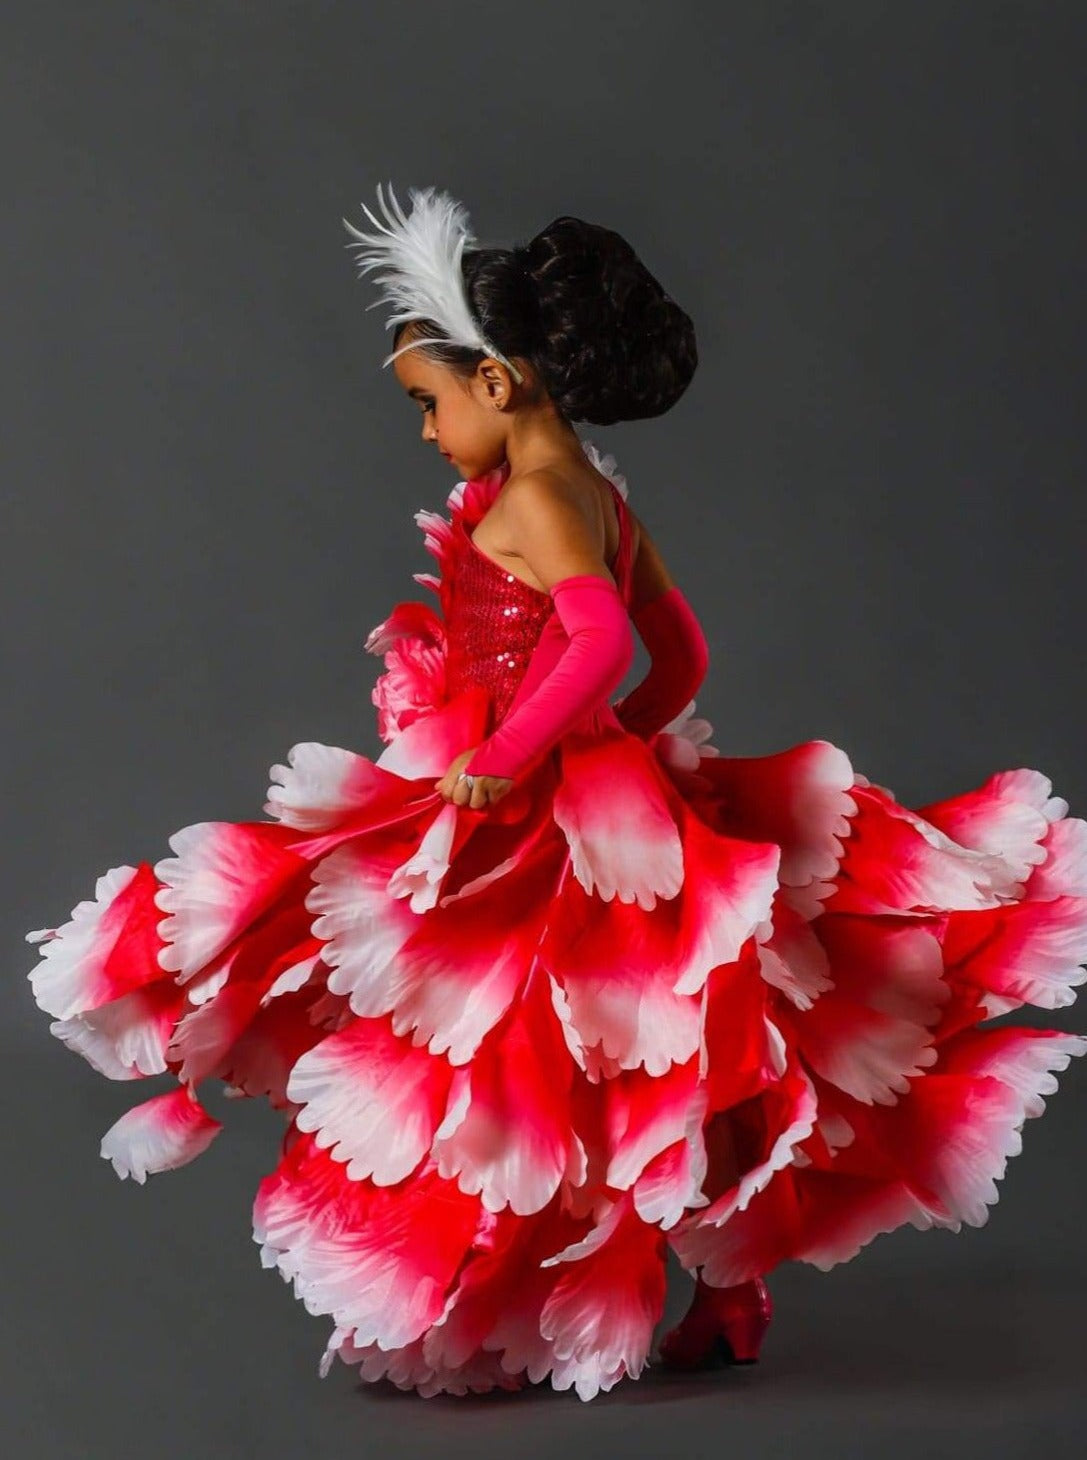 Halloween Costumes | Girls Deluxe Pink Spanish Flamenco Dancer Costume